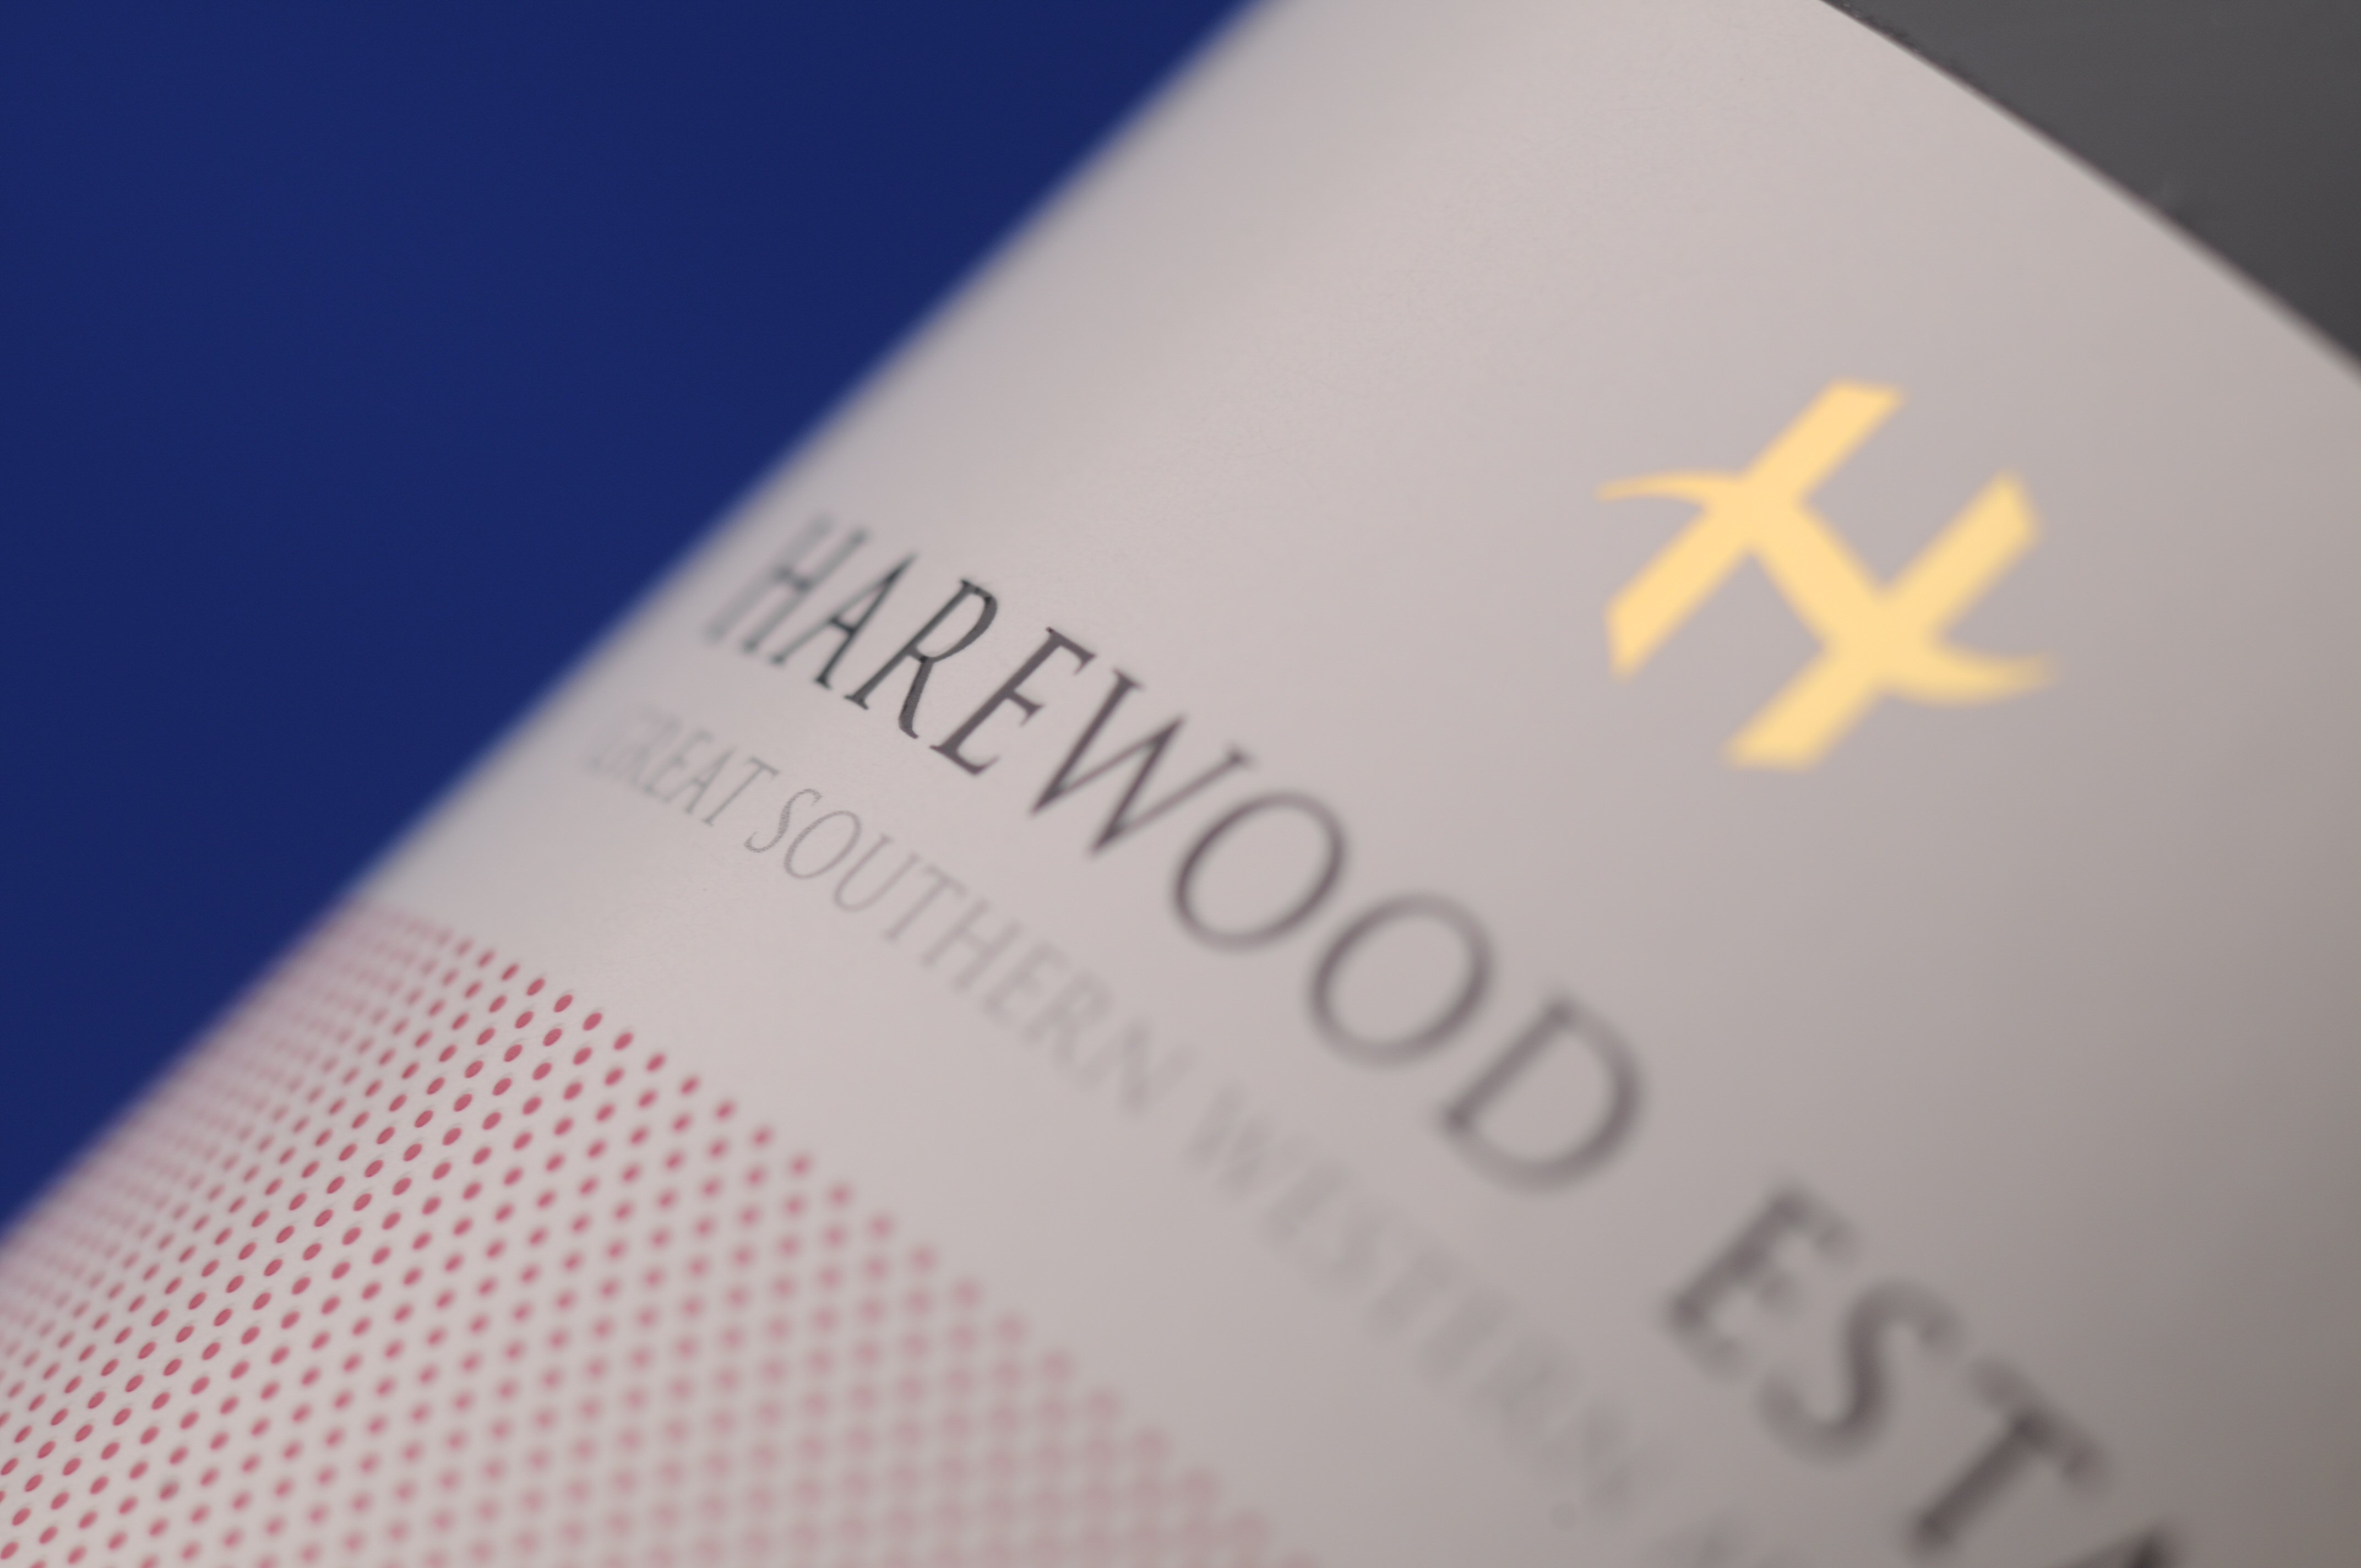 Harewood Estate Wines